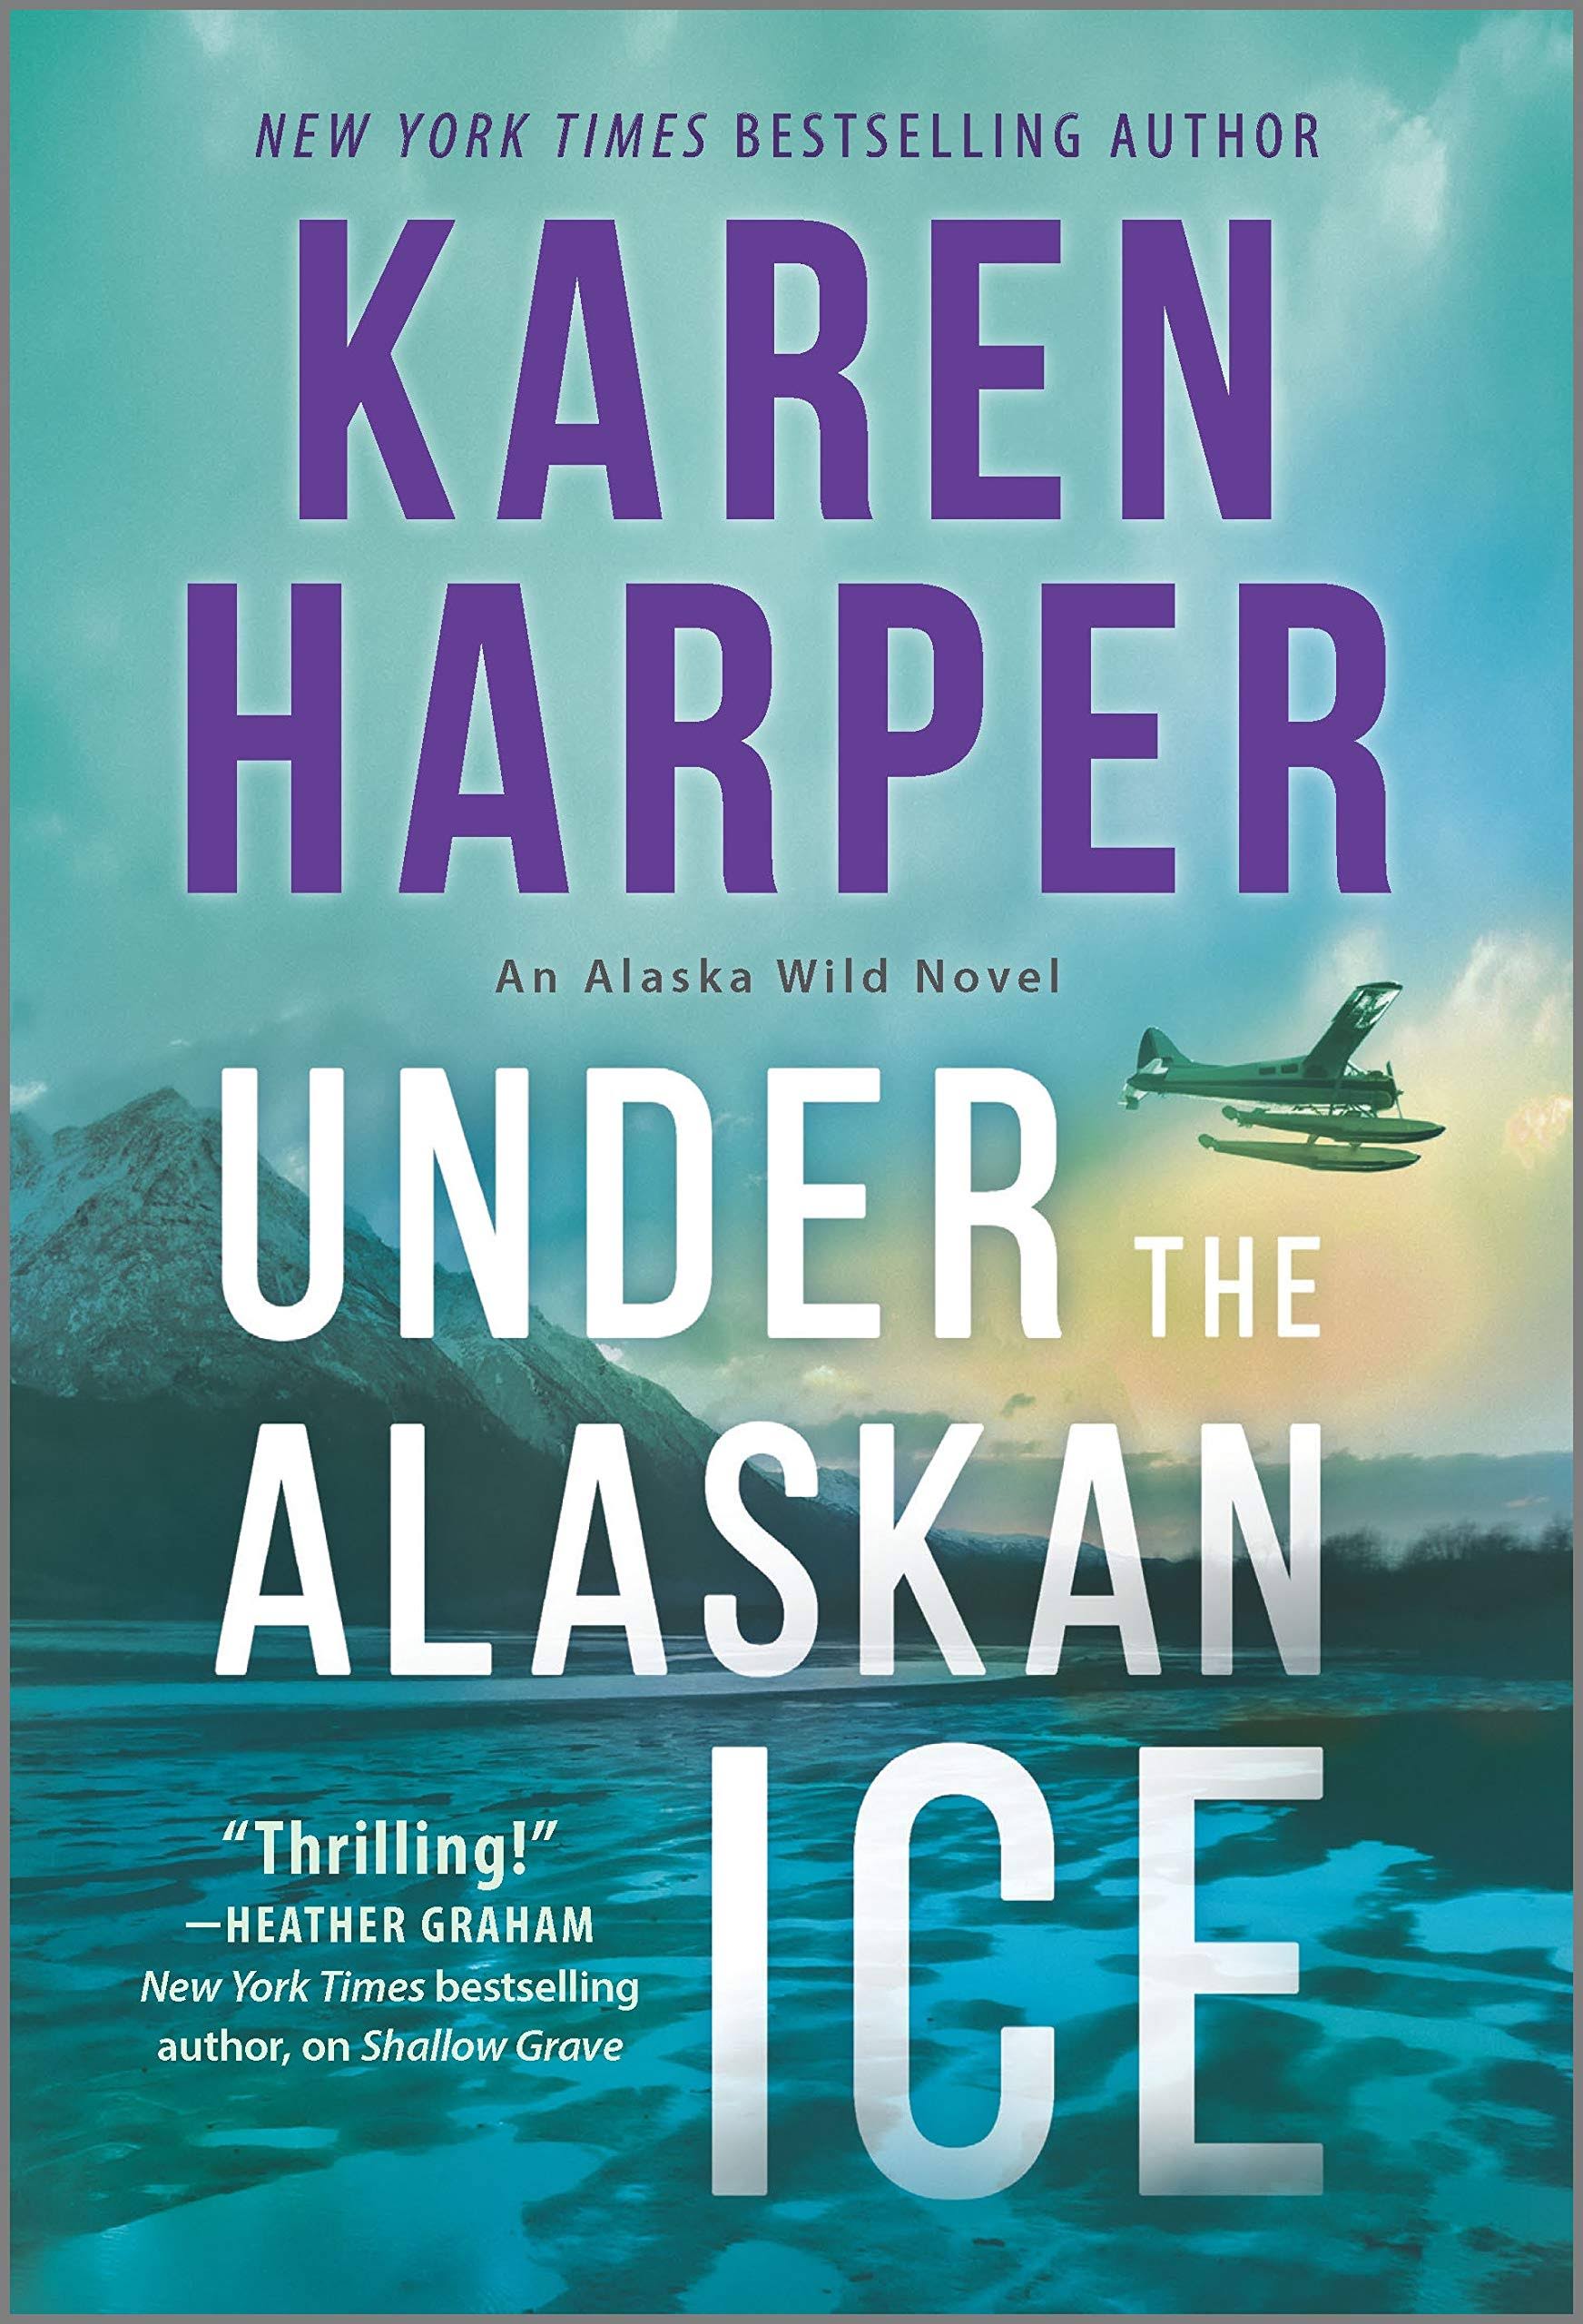 Under The Alaskan Ice by Karen Harper